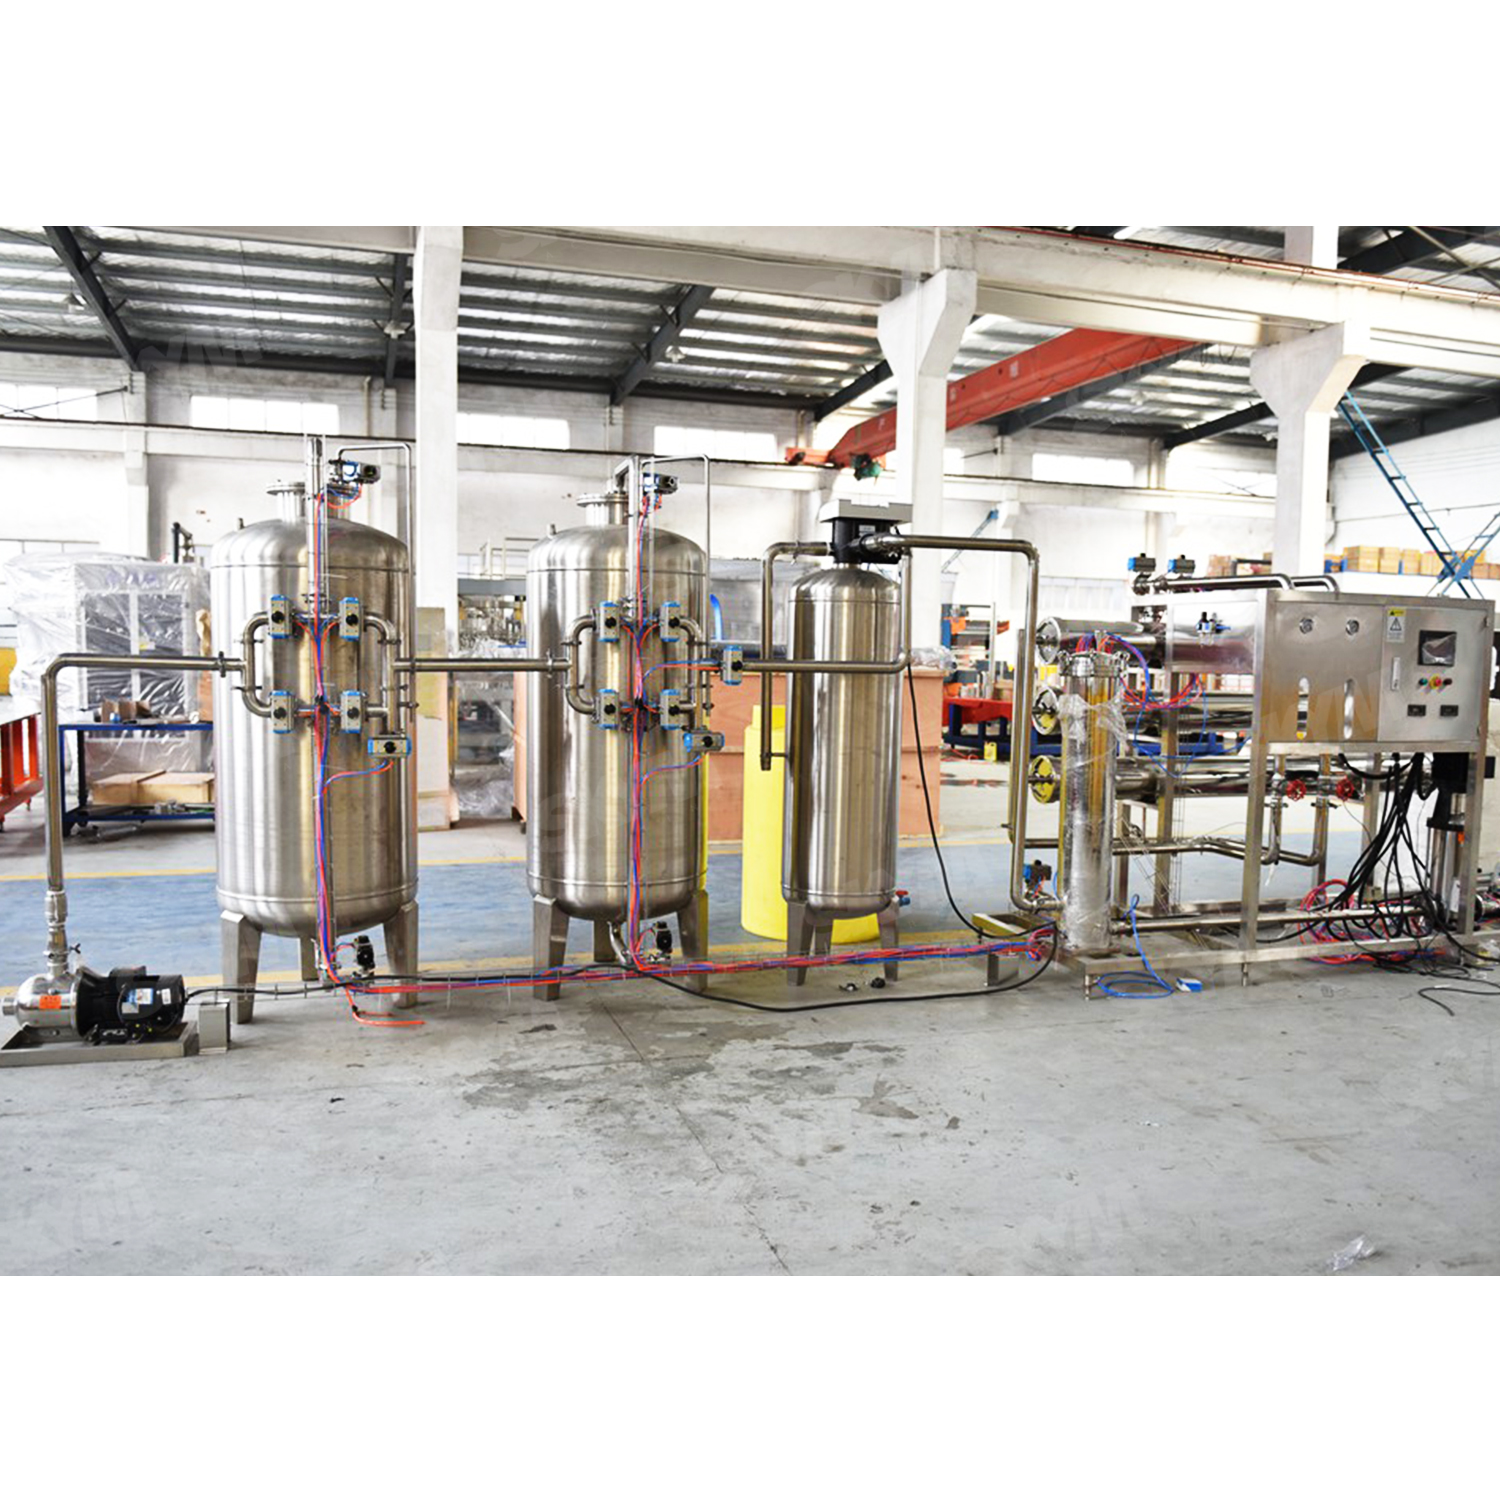 Equipo de tratamiento de agua de purificación del sistema RO de 8 toneladas